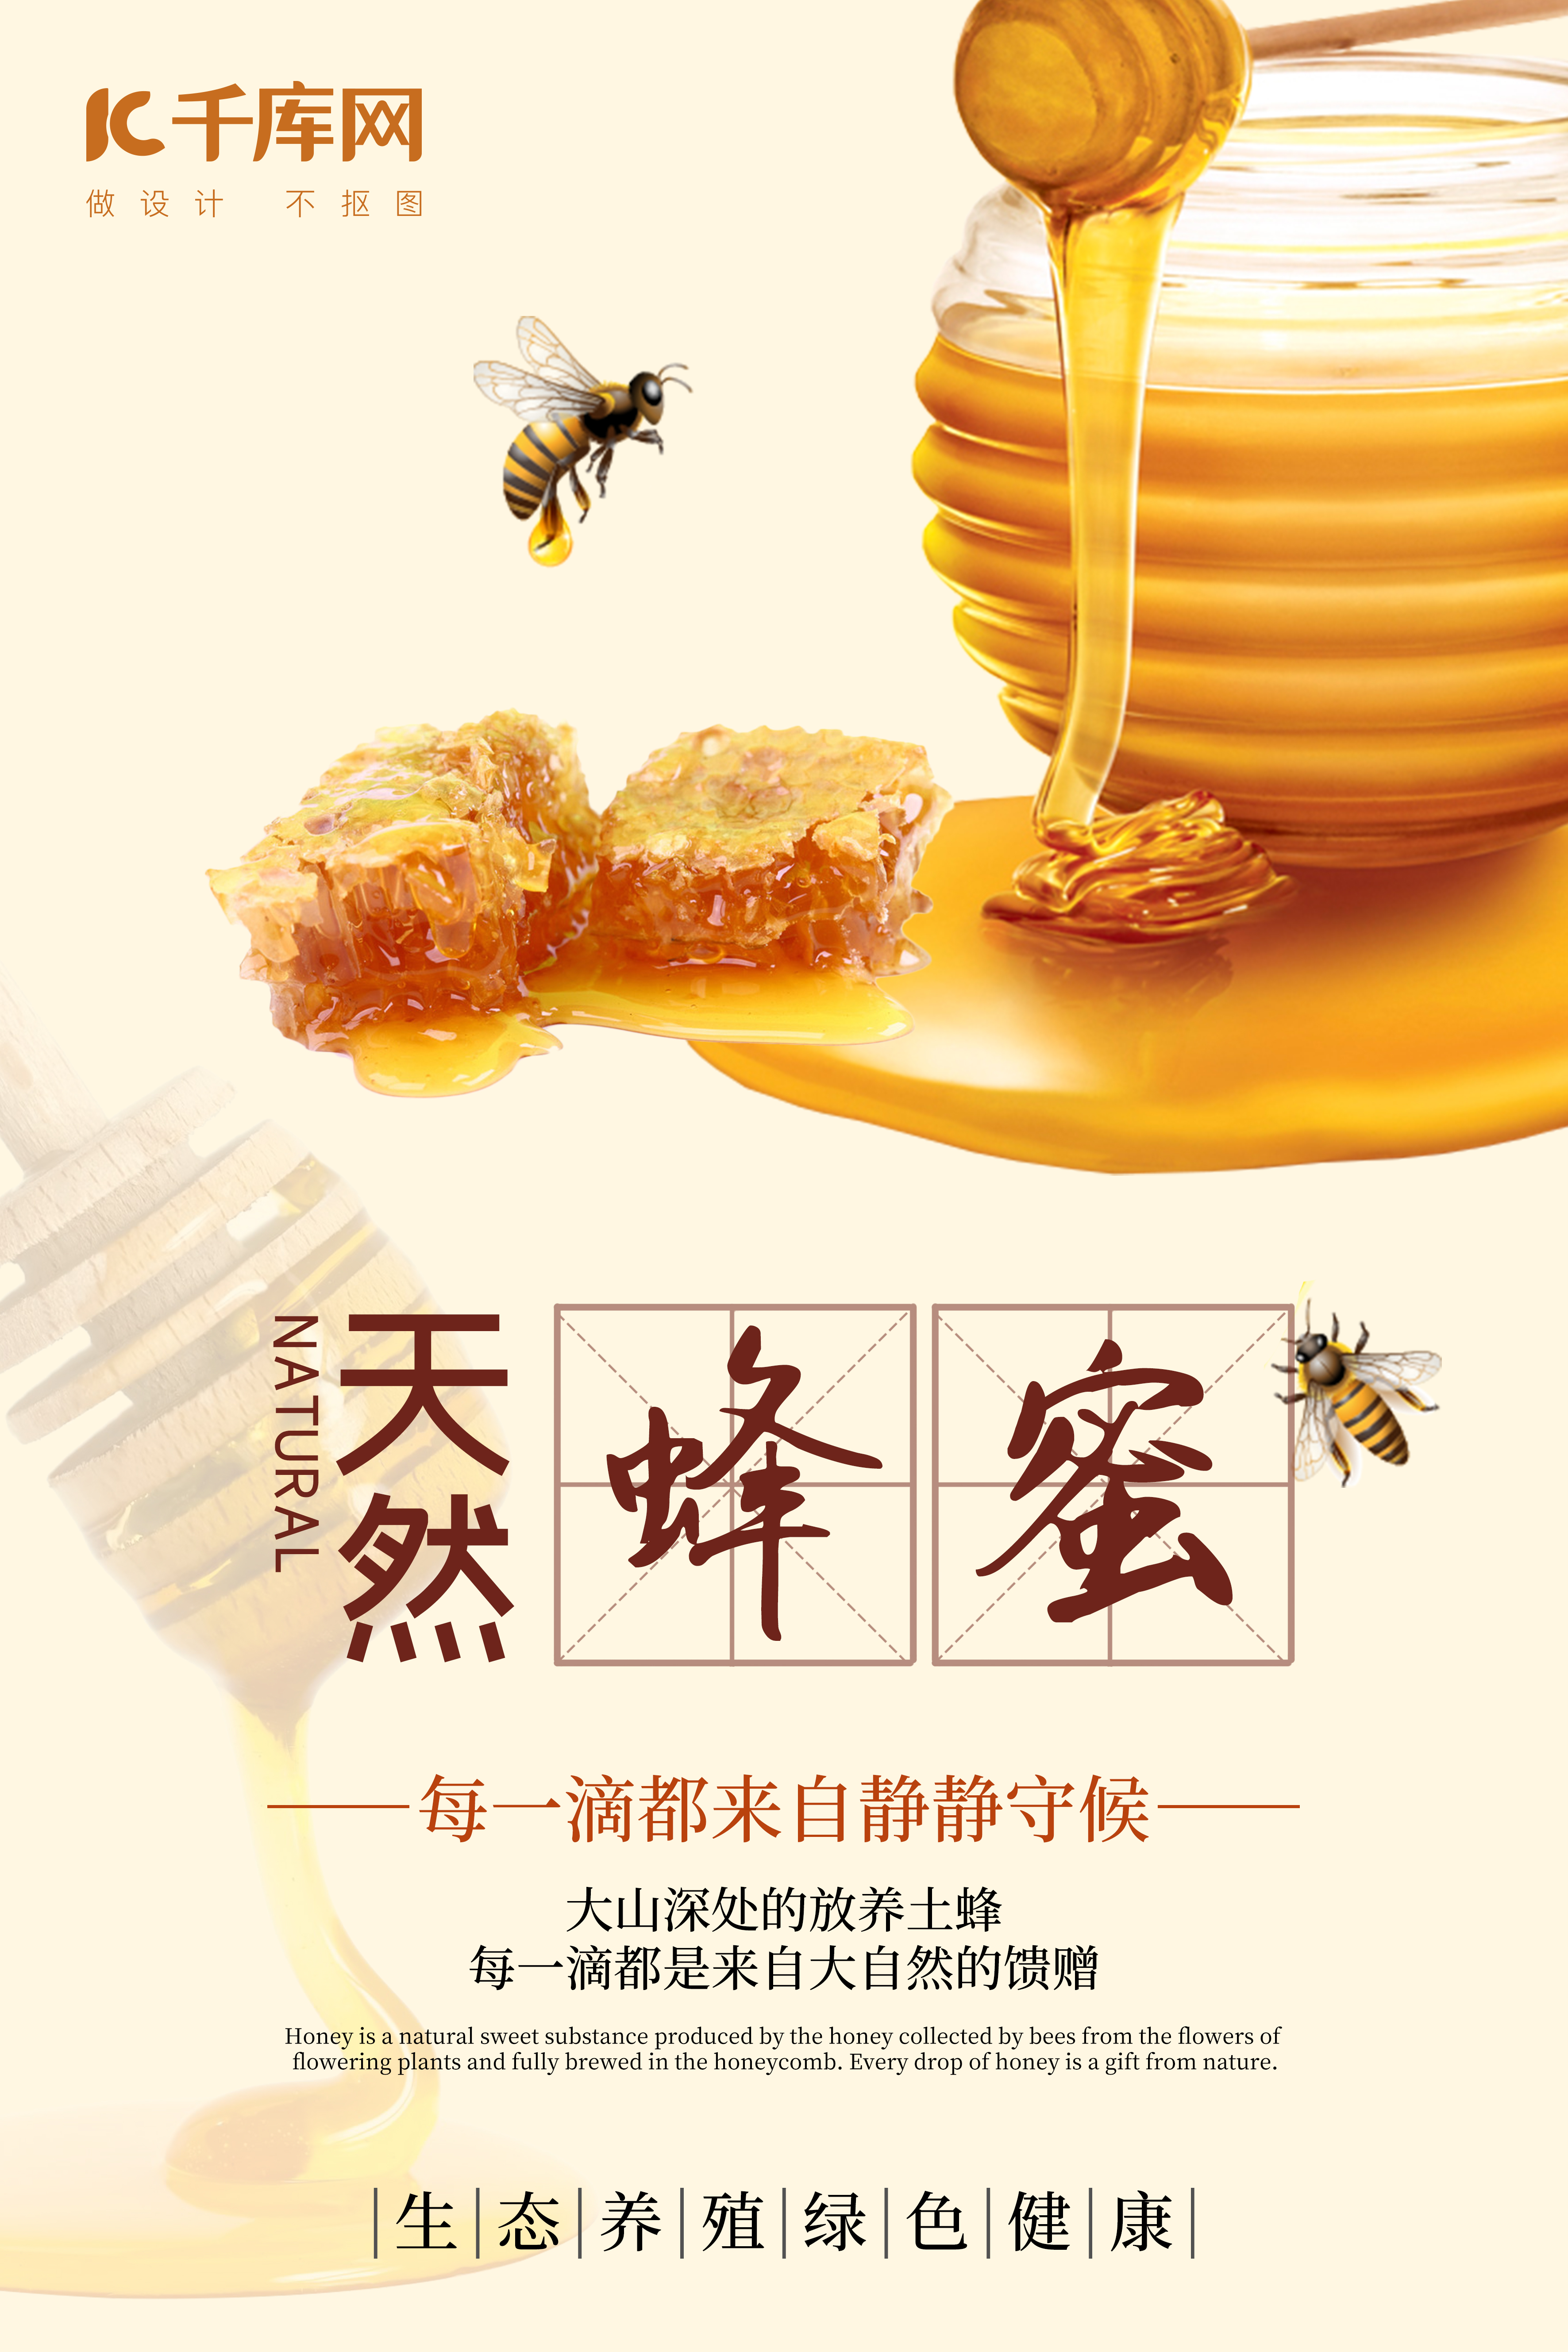 夏日养生天然蜂蜜系列主题海报图片